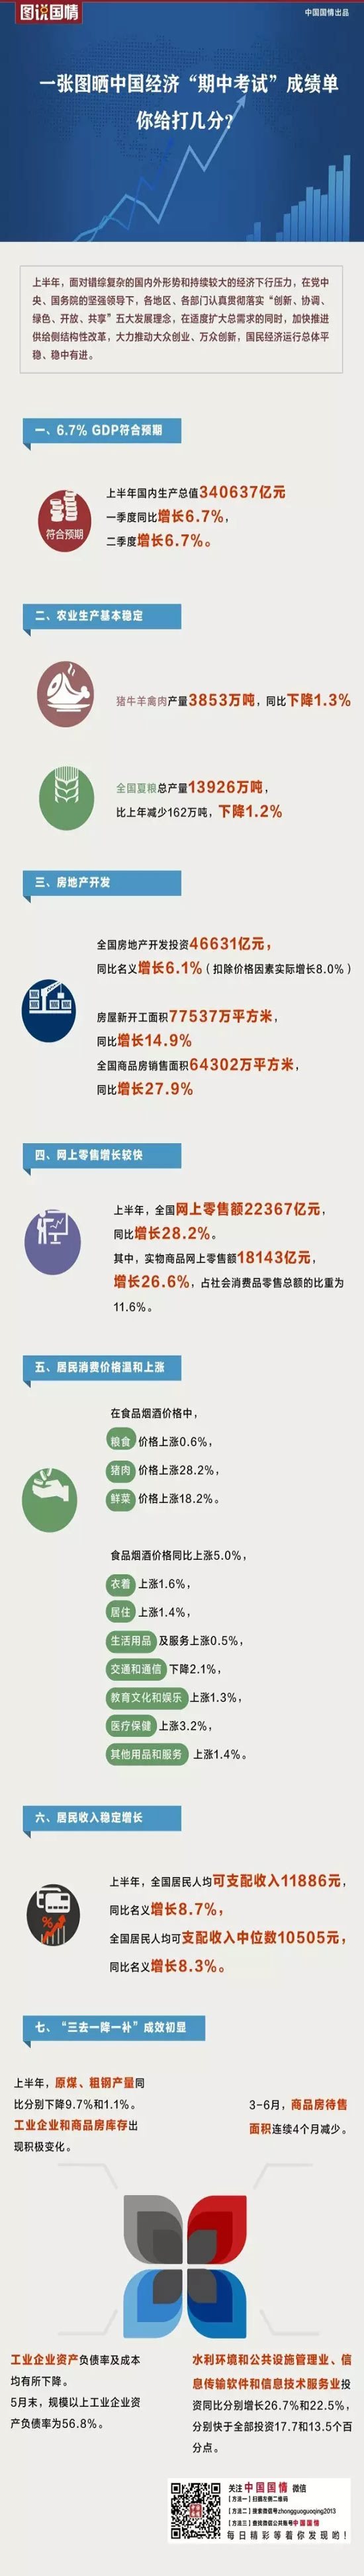 图说国情|一张图了解中国经济上半年走势